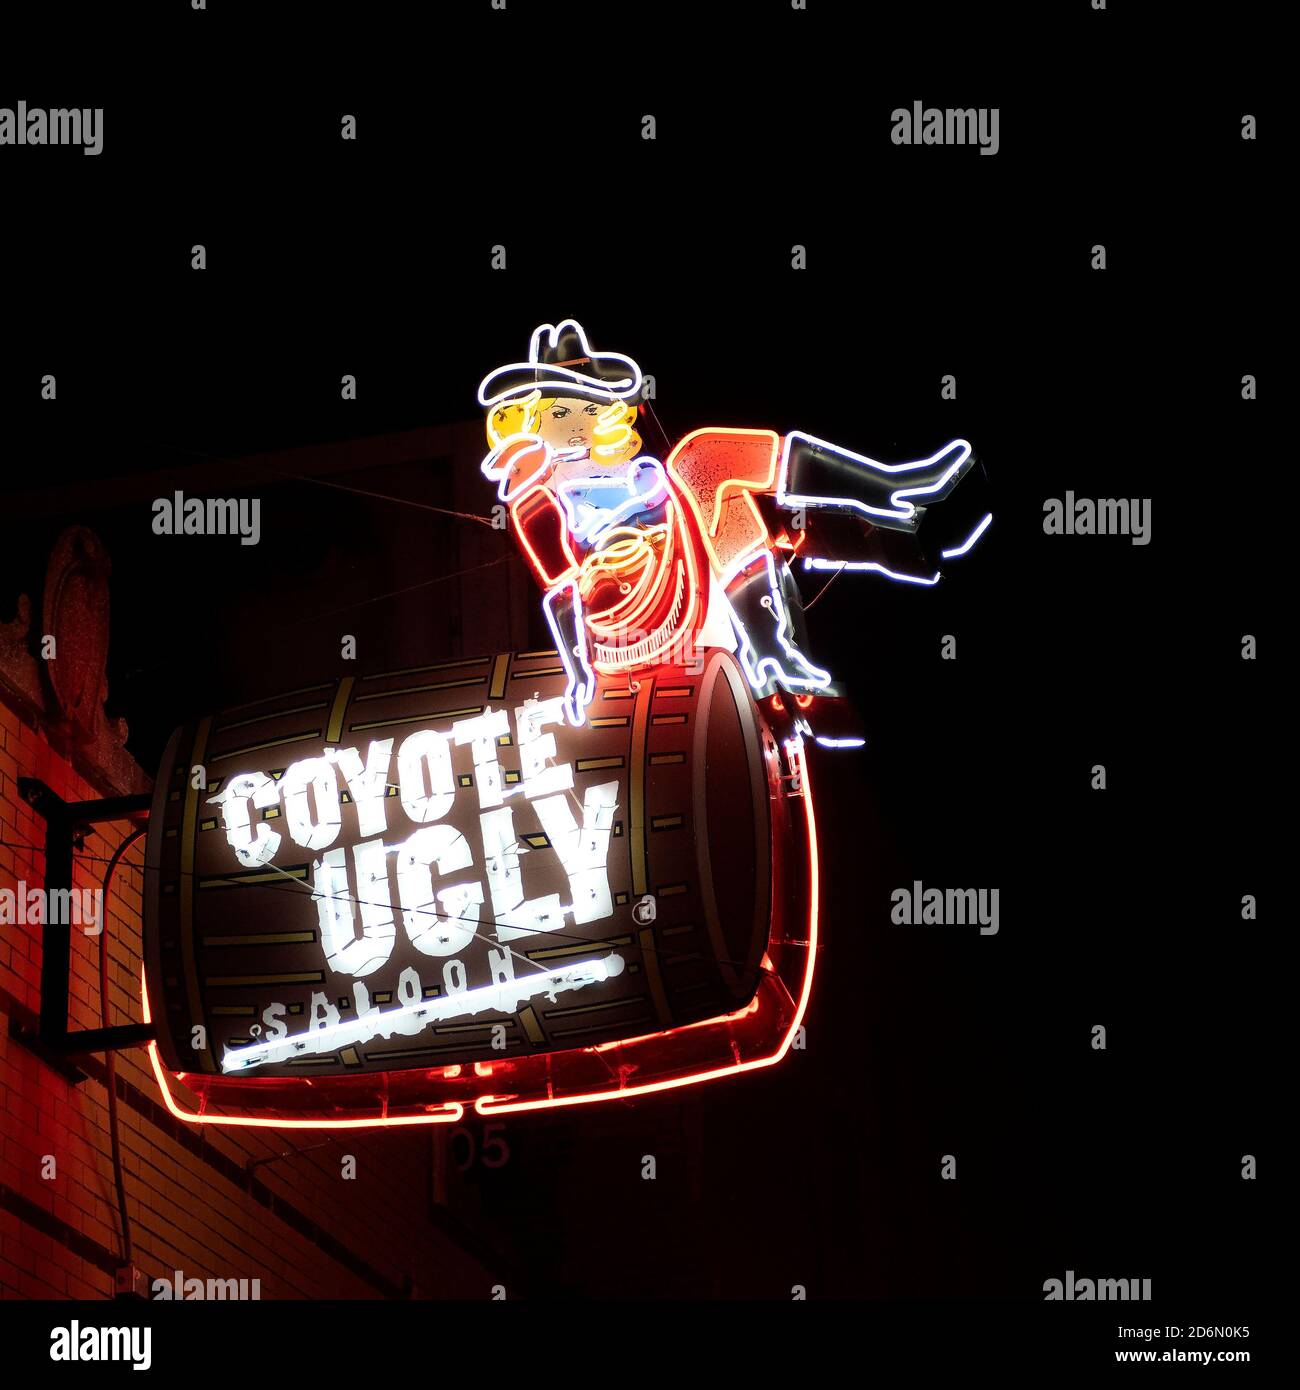 Memphis, TN, USA - 24 septembre 2019 : panneau néon pour Coyote Ugly Saloon sur la célèbre Beale Street. Il s'agit d'une chaîne de barres et a été présenté dans Banque D'Images